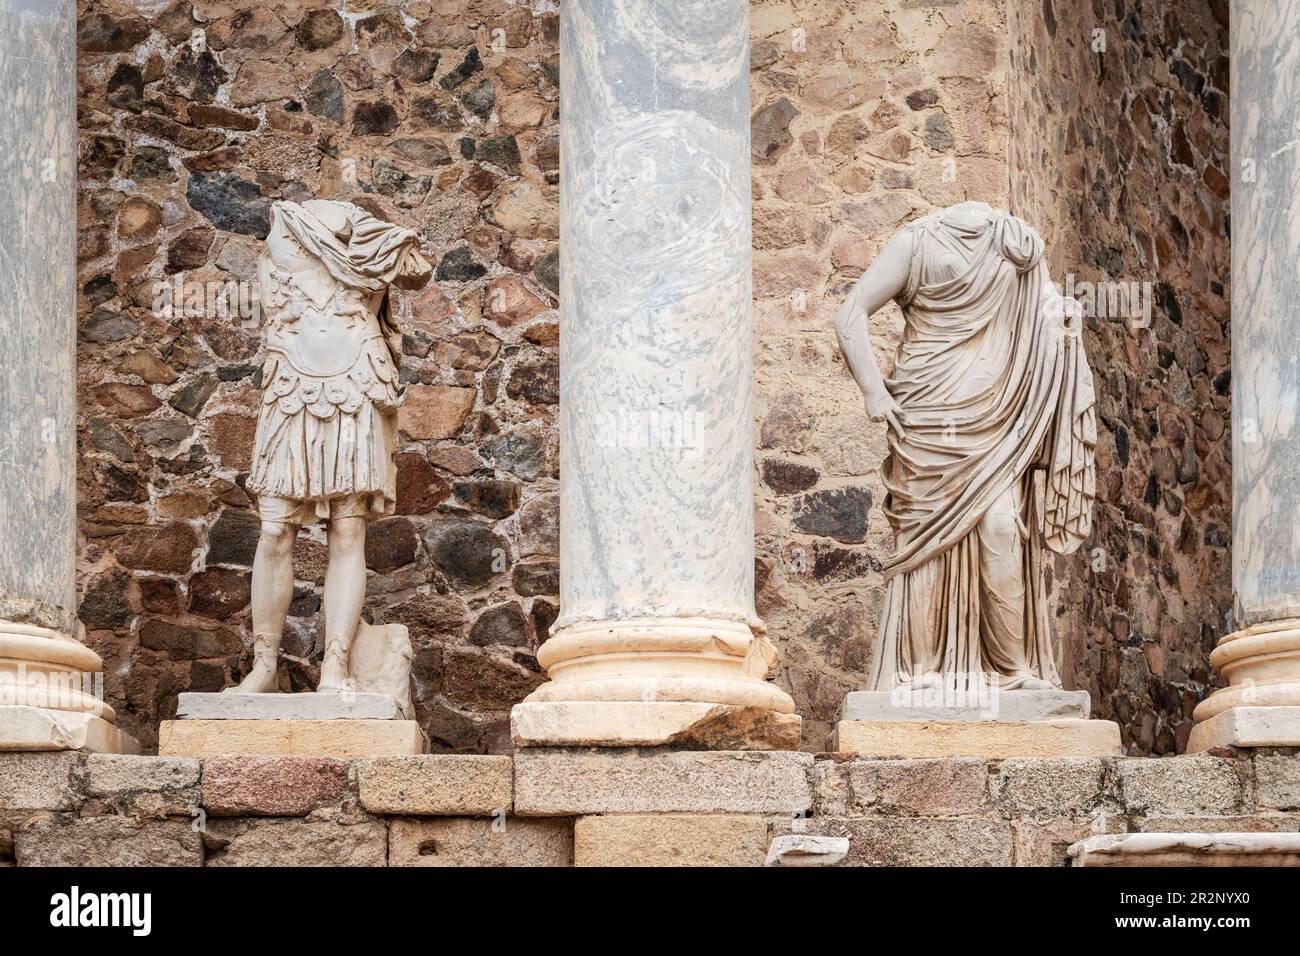 Dettagli del Teatro Romano di Merida in Estremadura, Spagna. Costruito negli anni dal 16 al 15 a.C., è ancora uno dei monumenti più famosi e visitati Foto Stock